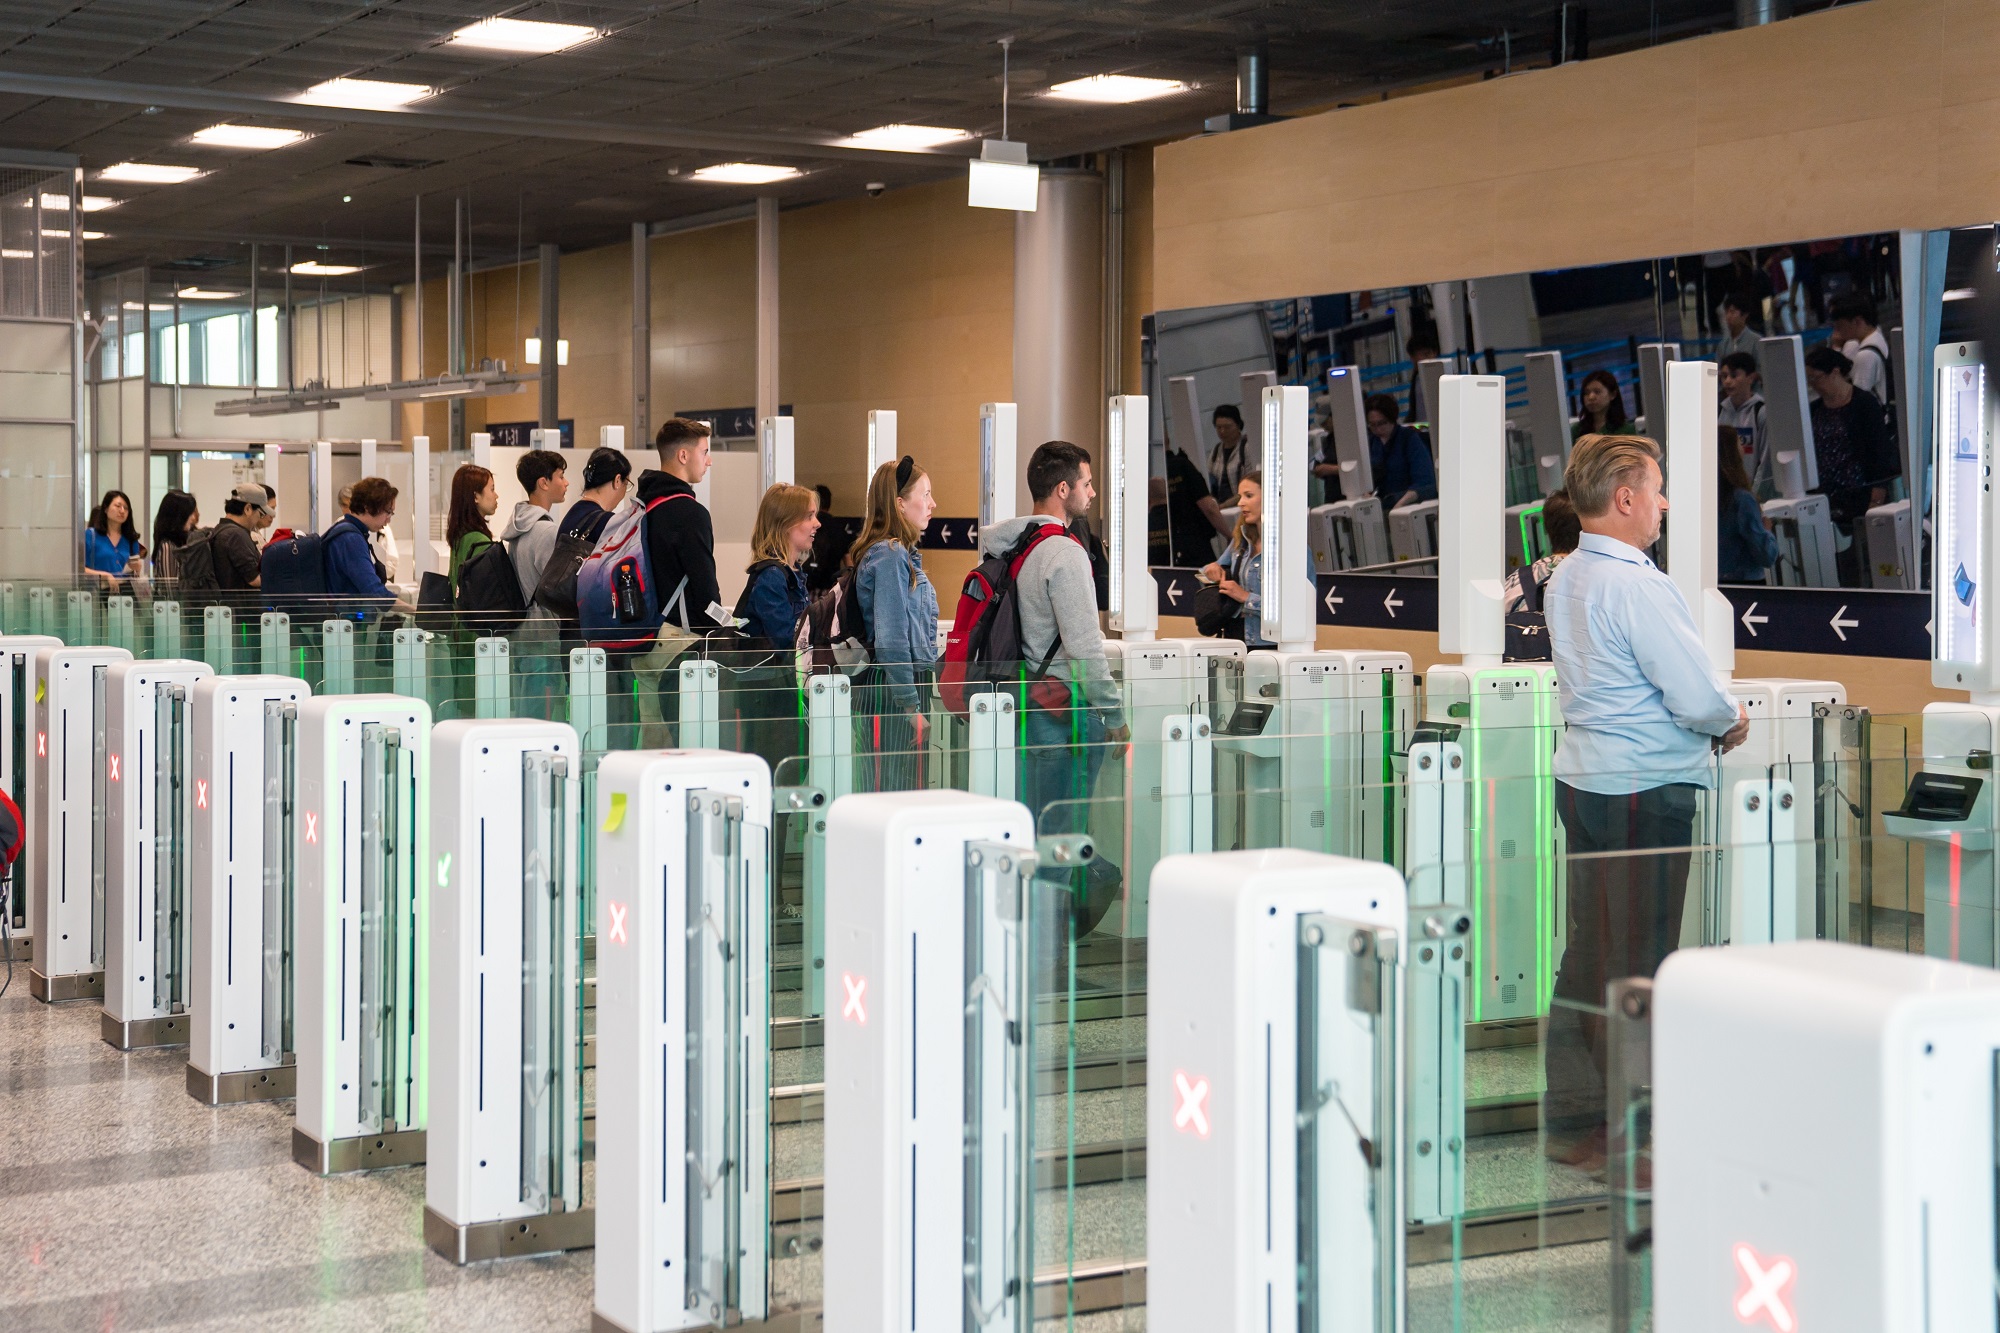 Автомат для прохождения пограничного контроля и пассажиры в аеропорту Хельсинки-Вантаа